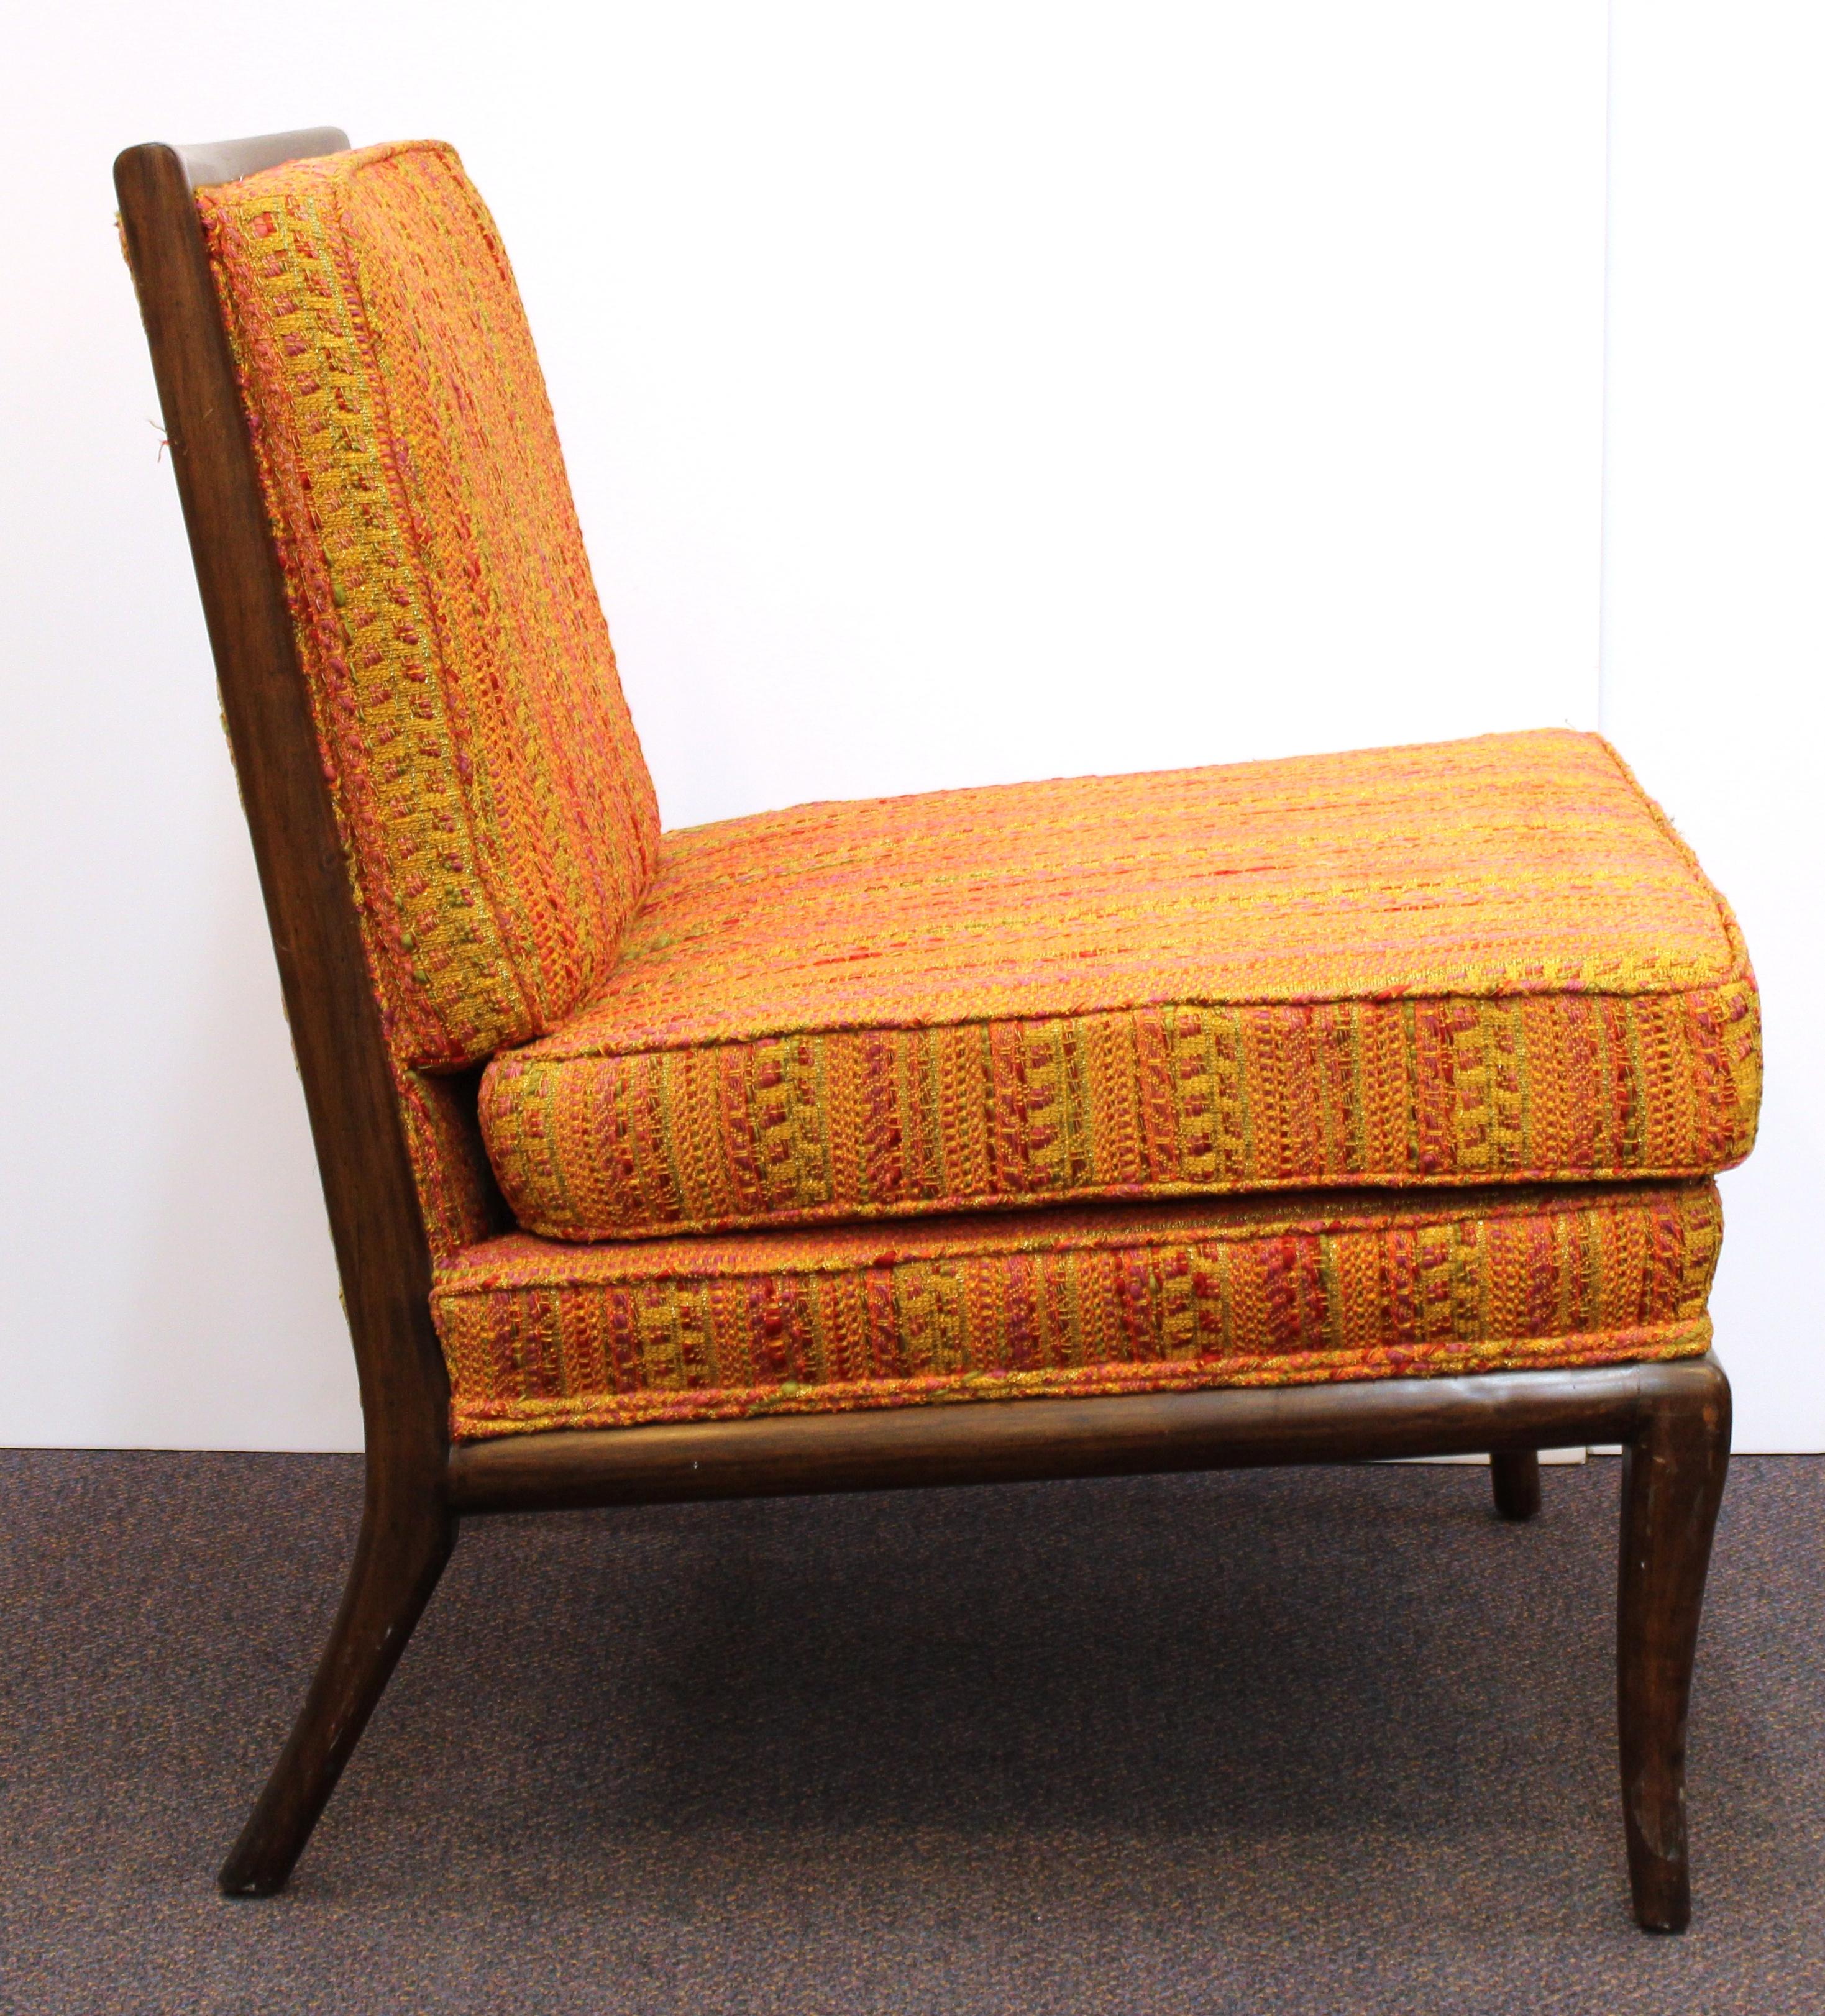 Upholstery Robsjohn-Gibbings Mid-Century Modern Slipper Chairs in Original Fabric